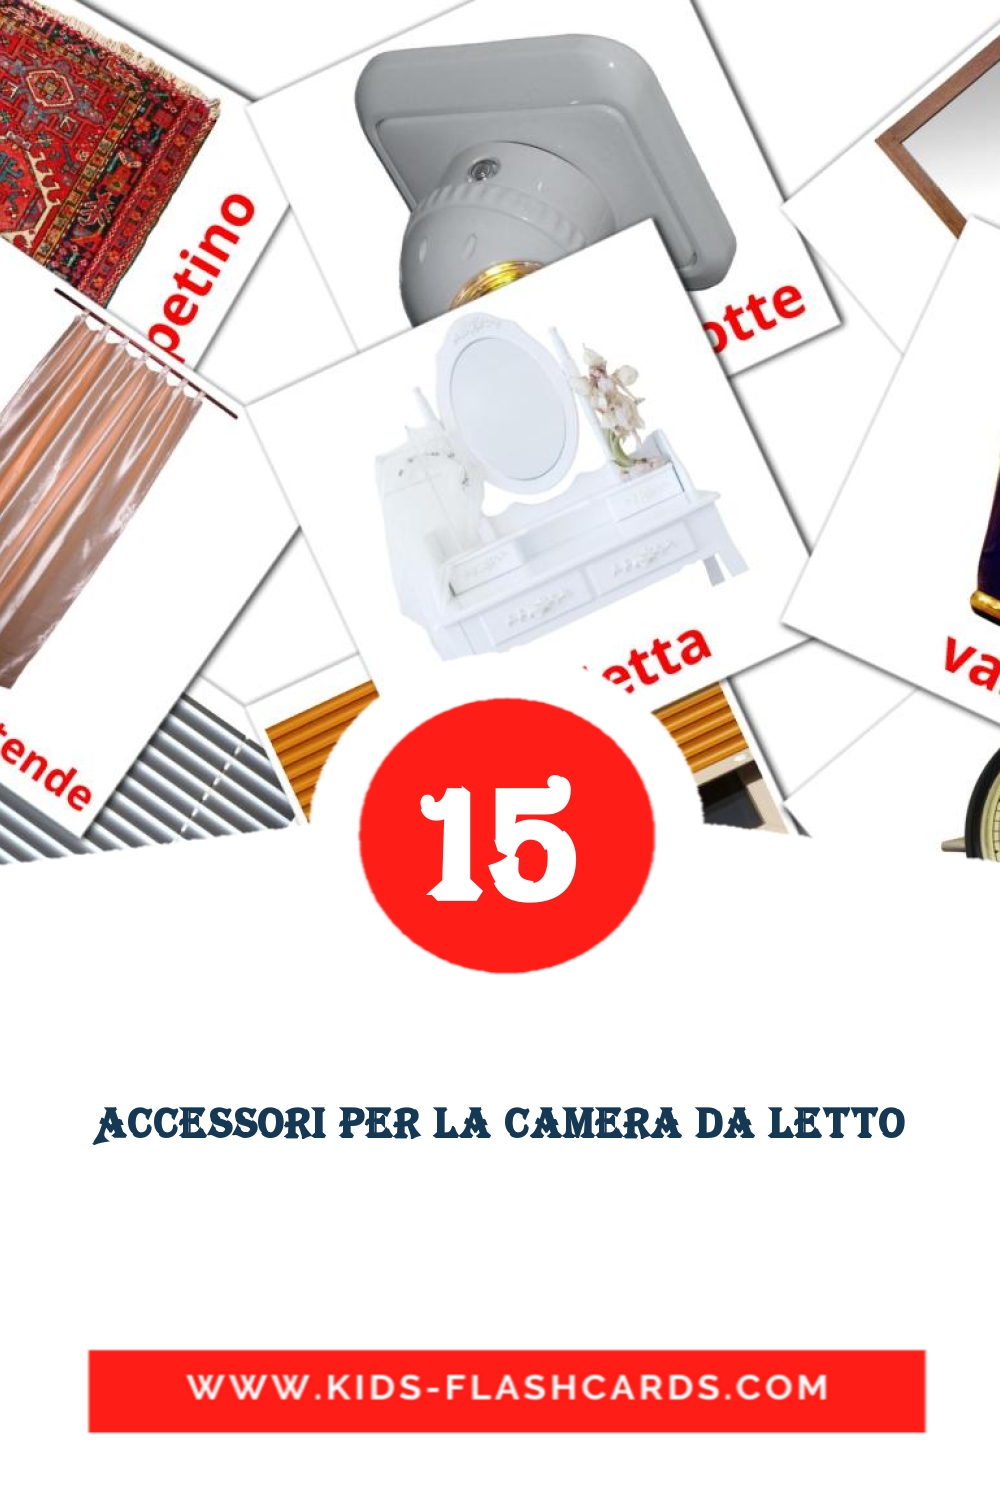 18 Accessori per la camera da letto Picture Cards for Kindergarden in italian